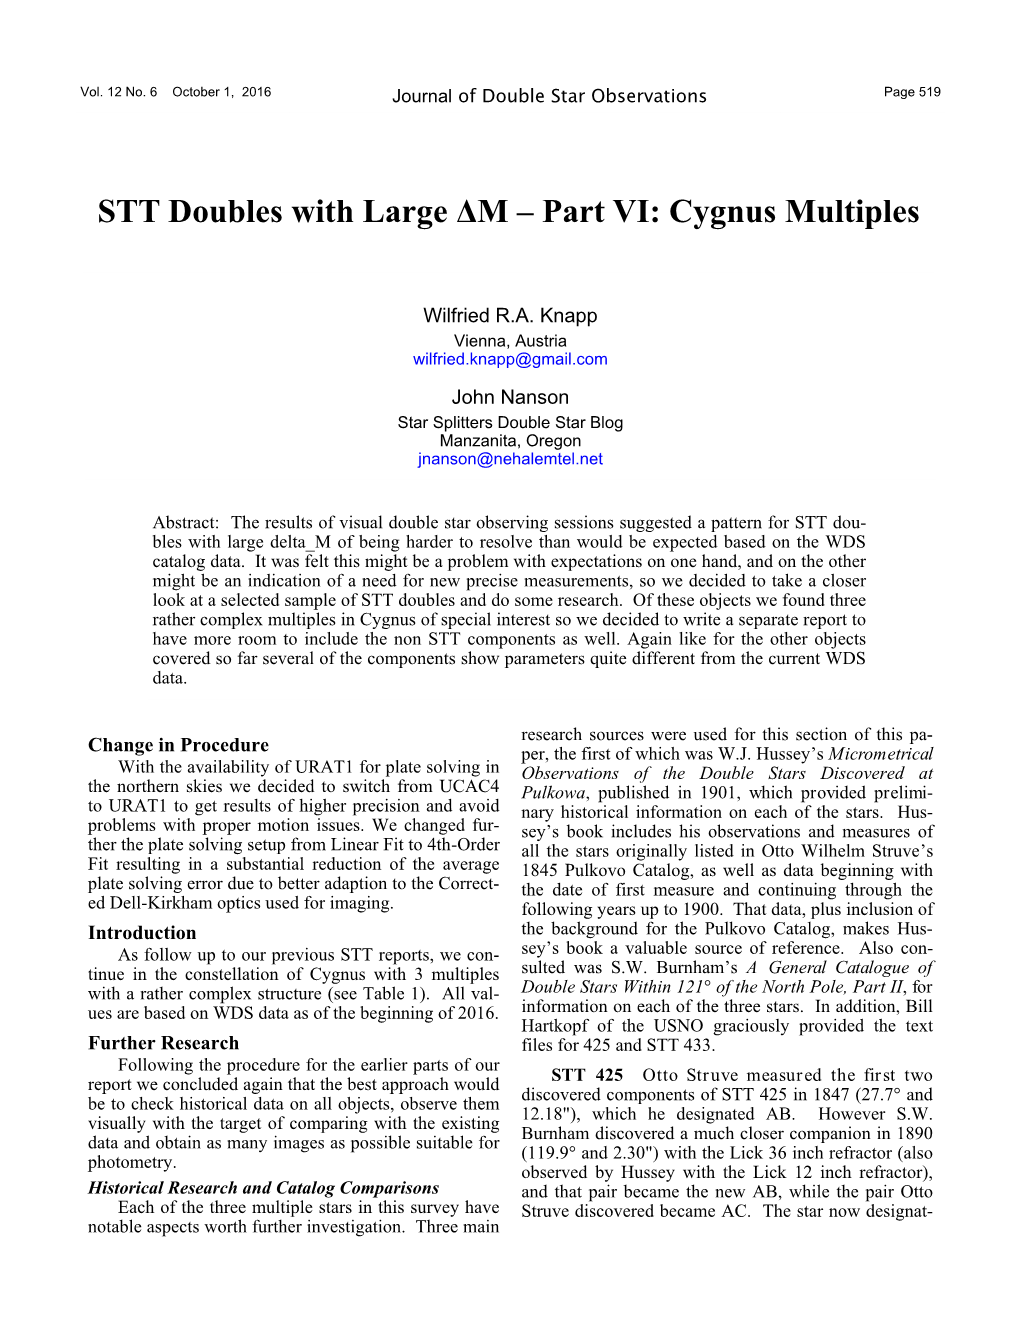 STT Doubles with Large ΔM – Part VI: Cygnus Multiples